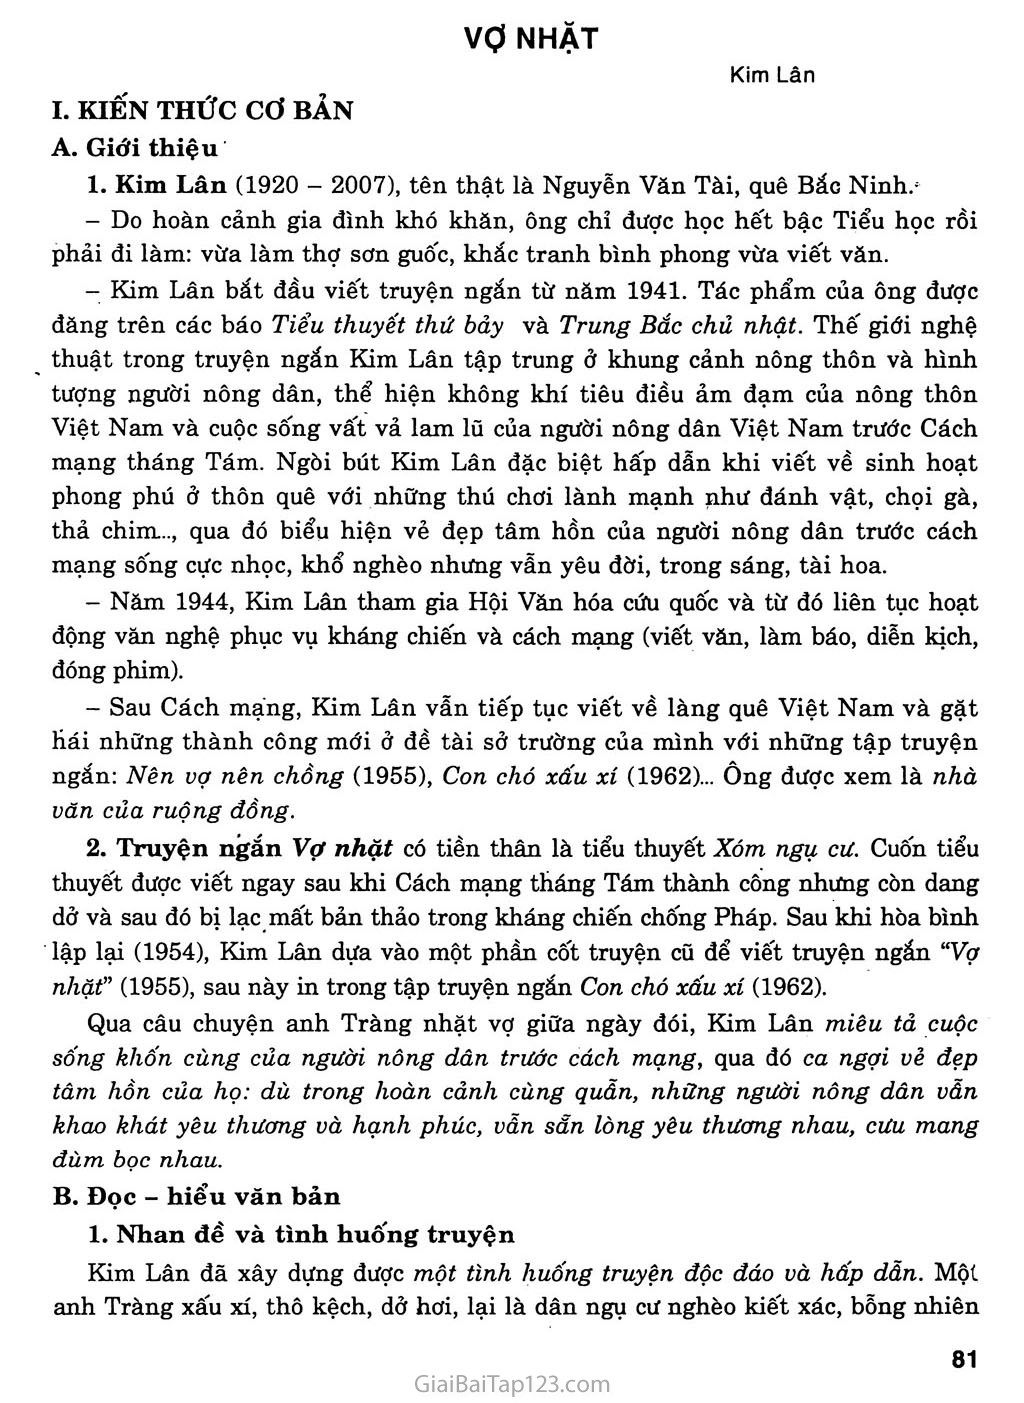 Vợ nhặt (Kim Lân, 1955) trang 1